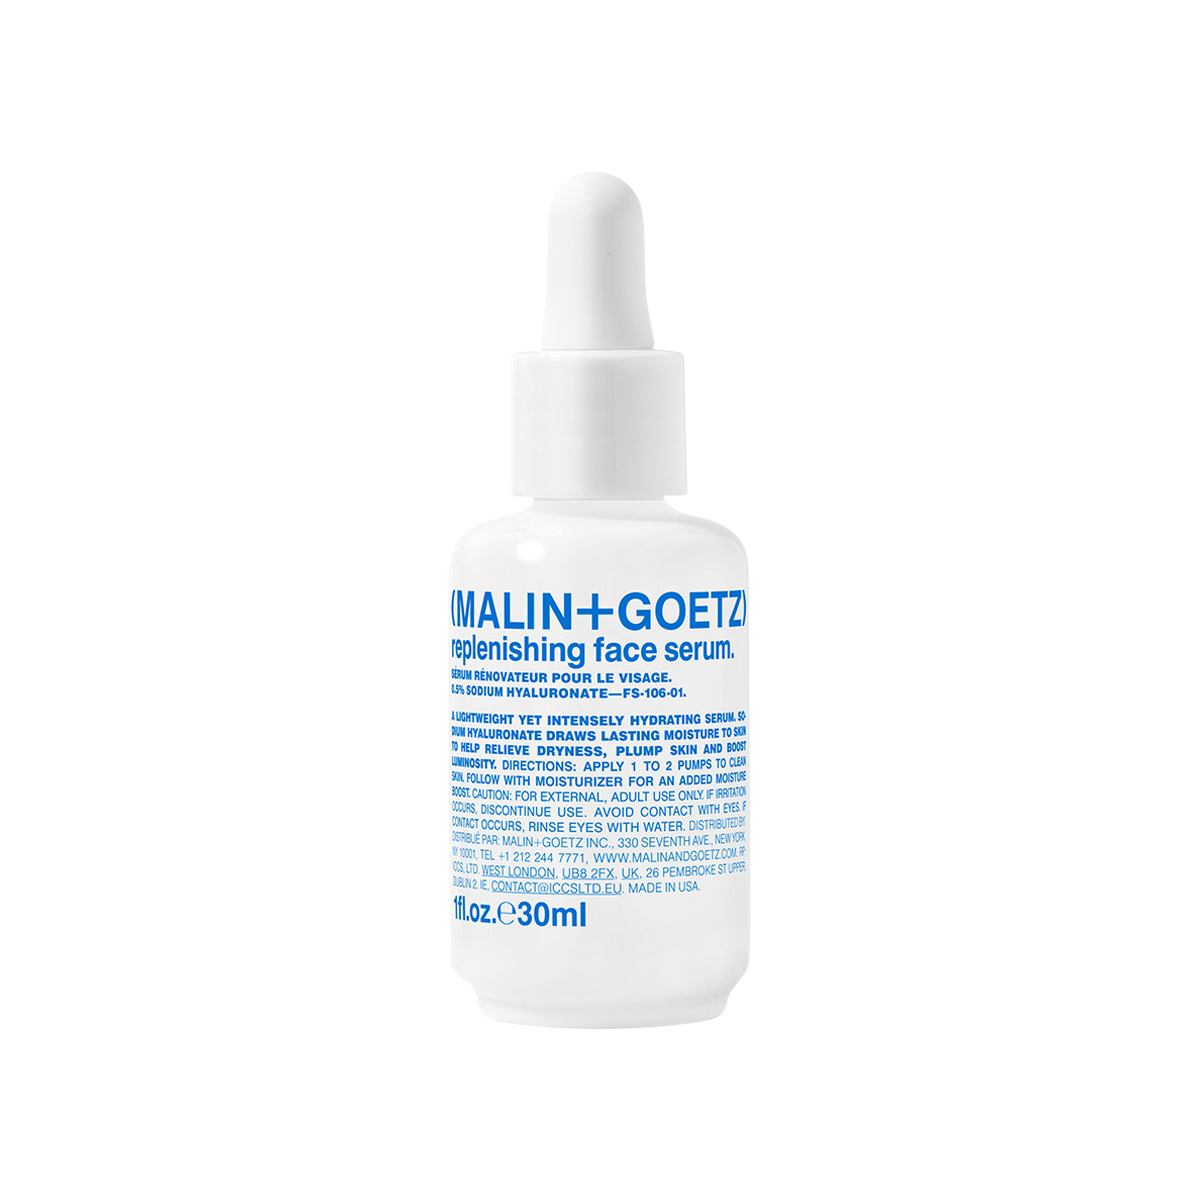 MALIN+GOETZ - Replenishing Face Serum